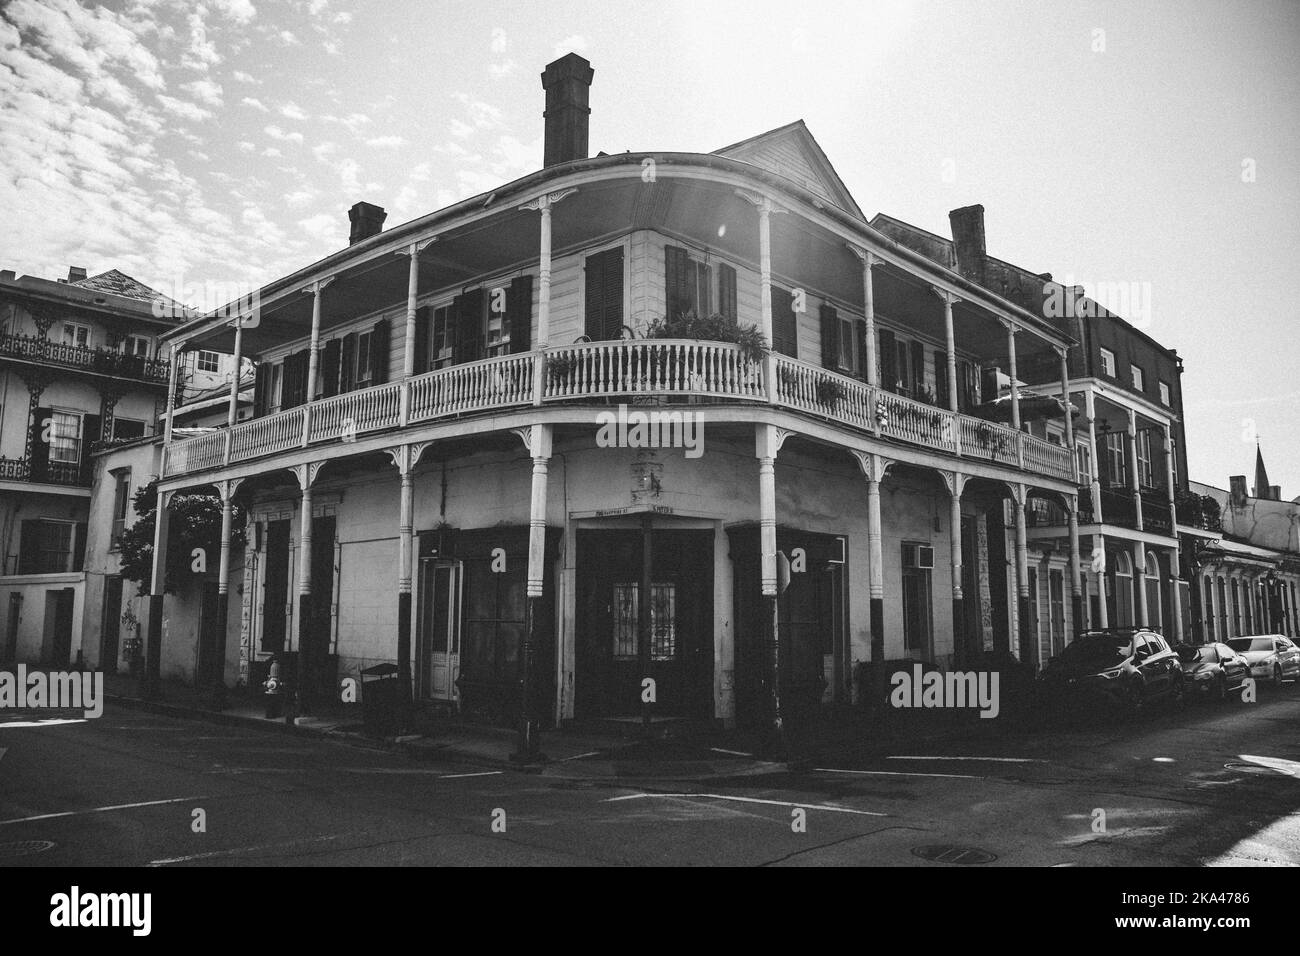 Una fotografía en escala de grises de un edificio histórico tradicional en la calle Bourbon de Nueva Orleans Foto de stock